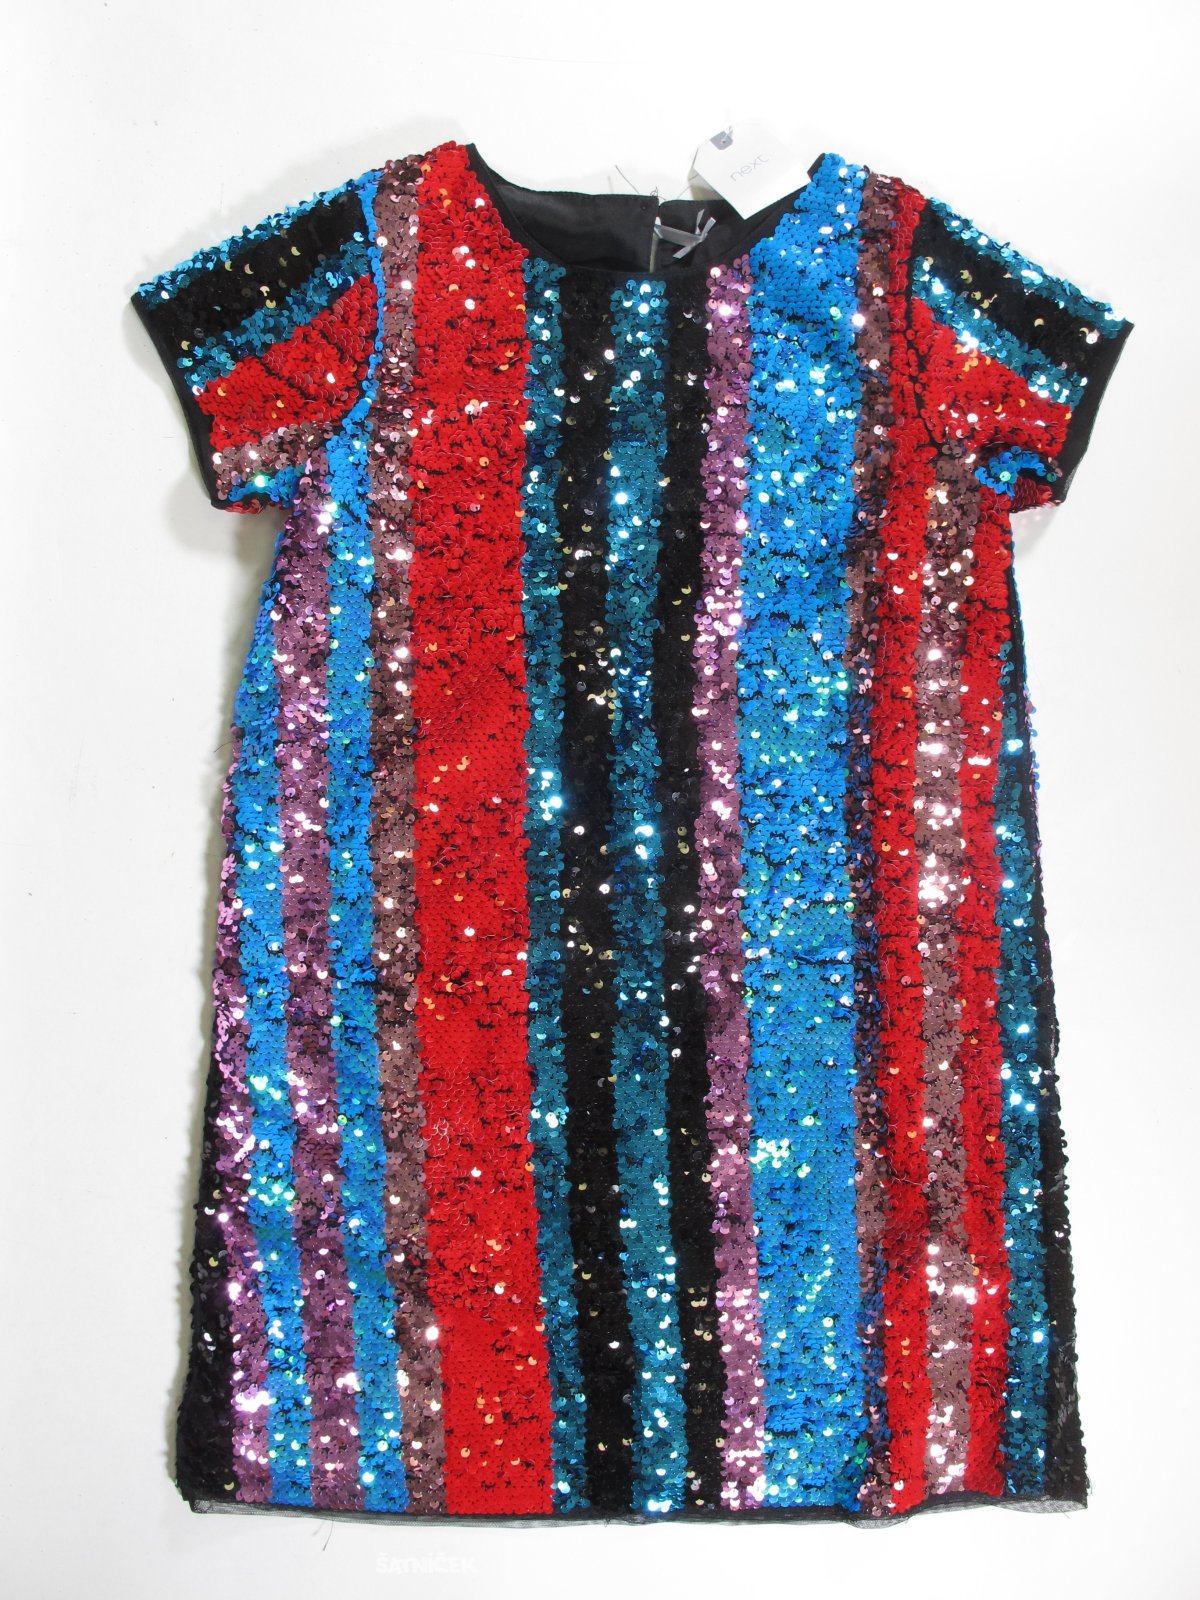 Flitrované šaty pro holky outlet